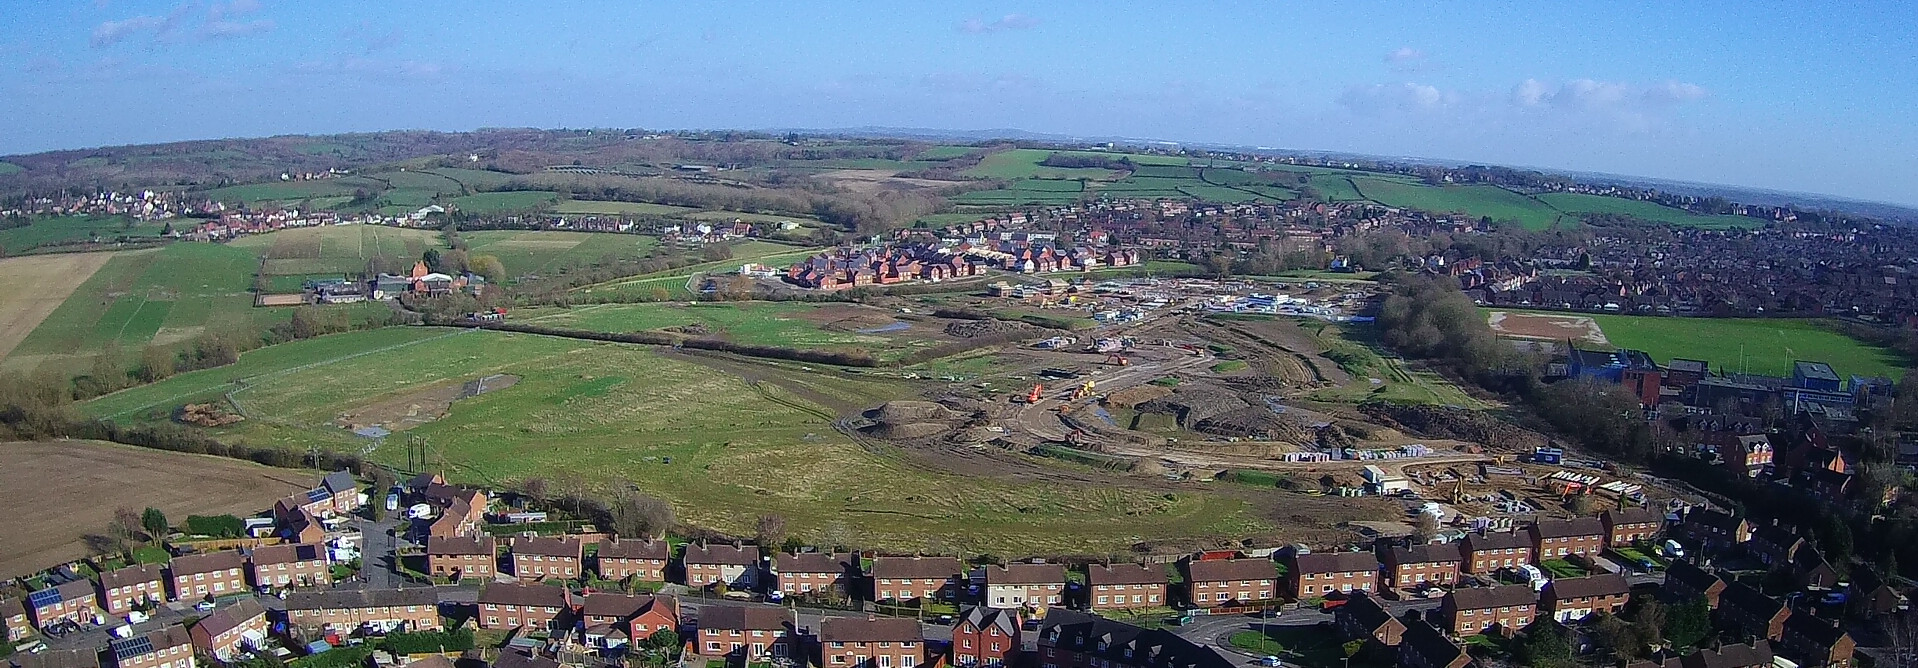 An aerial view of Hartshorne Village taken from Church Street